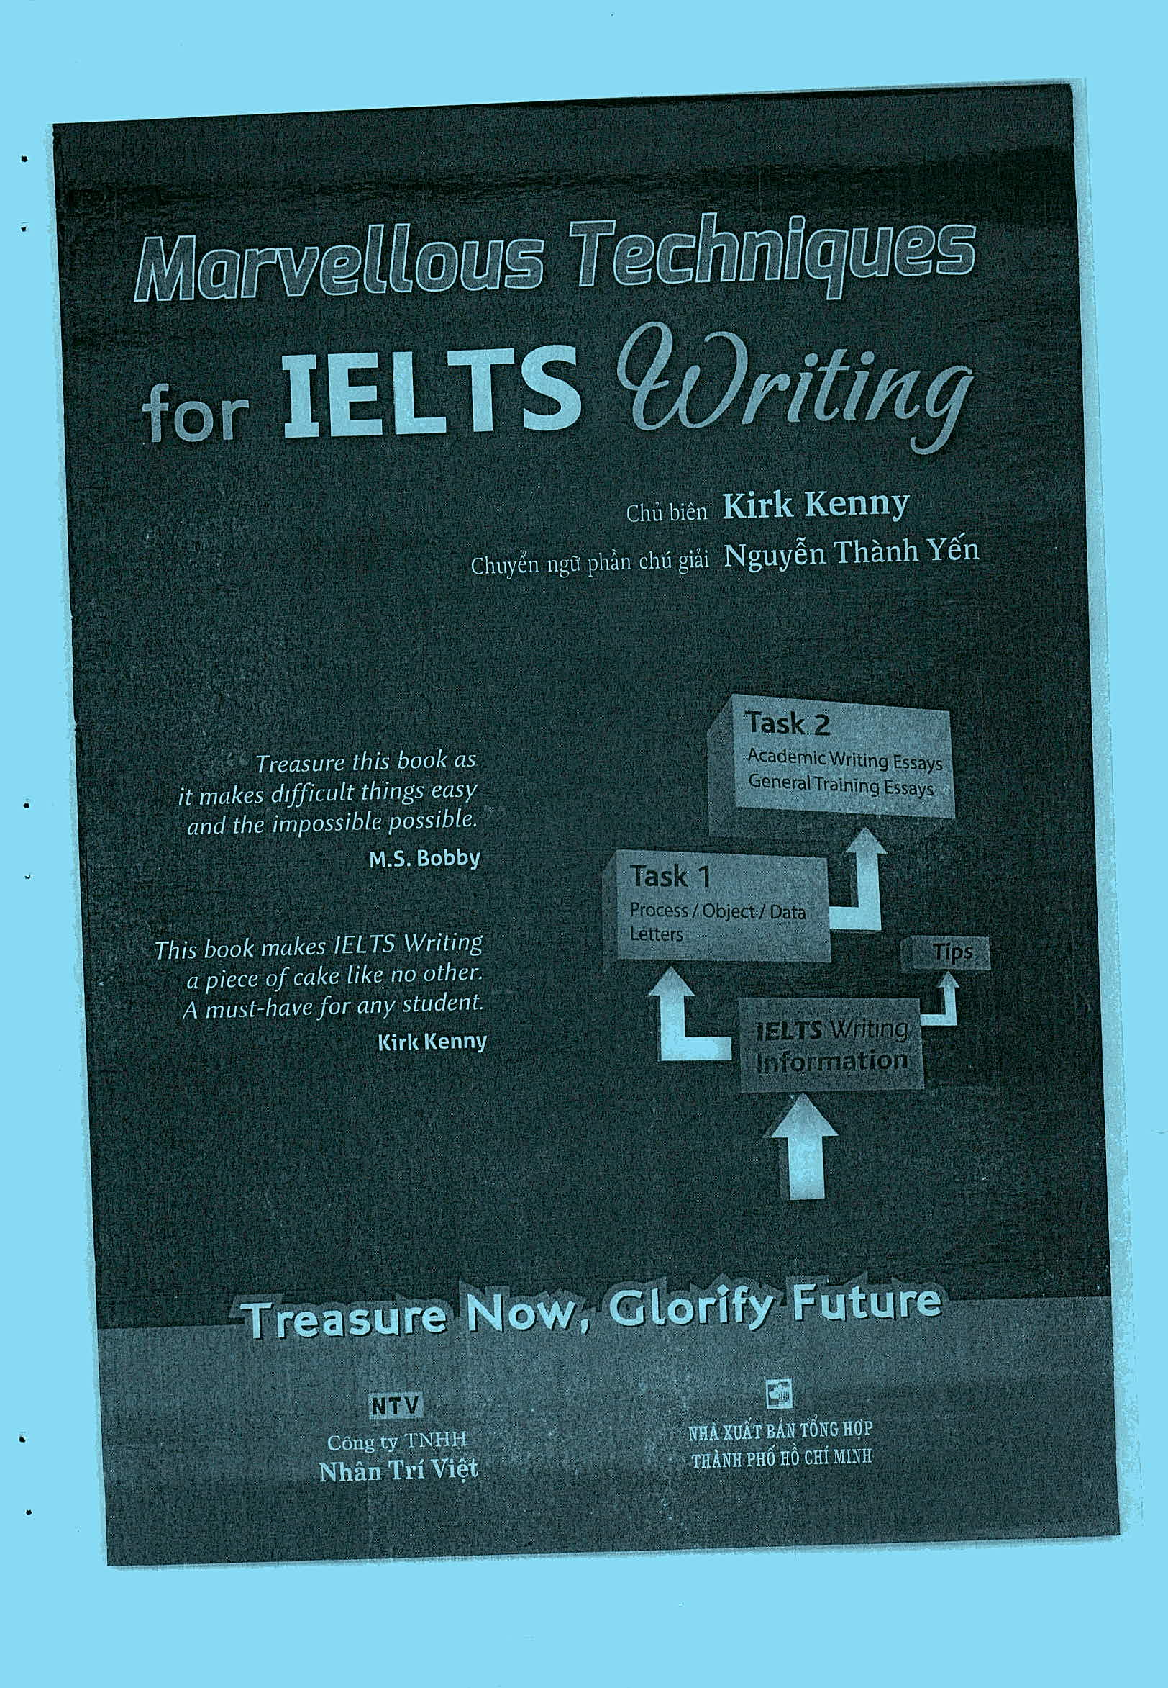 Sách Marvellous Techniques For IELTS Writing | Xem online, tải PDF miễn phí (trang 1)